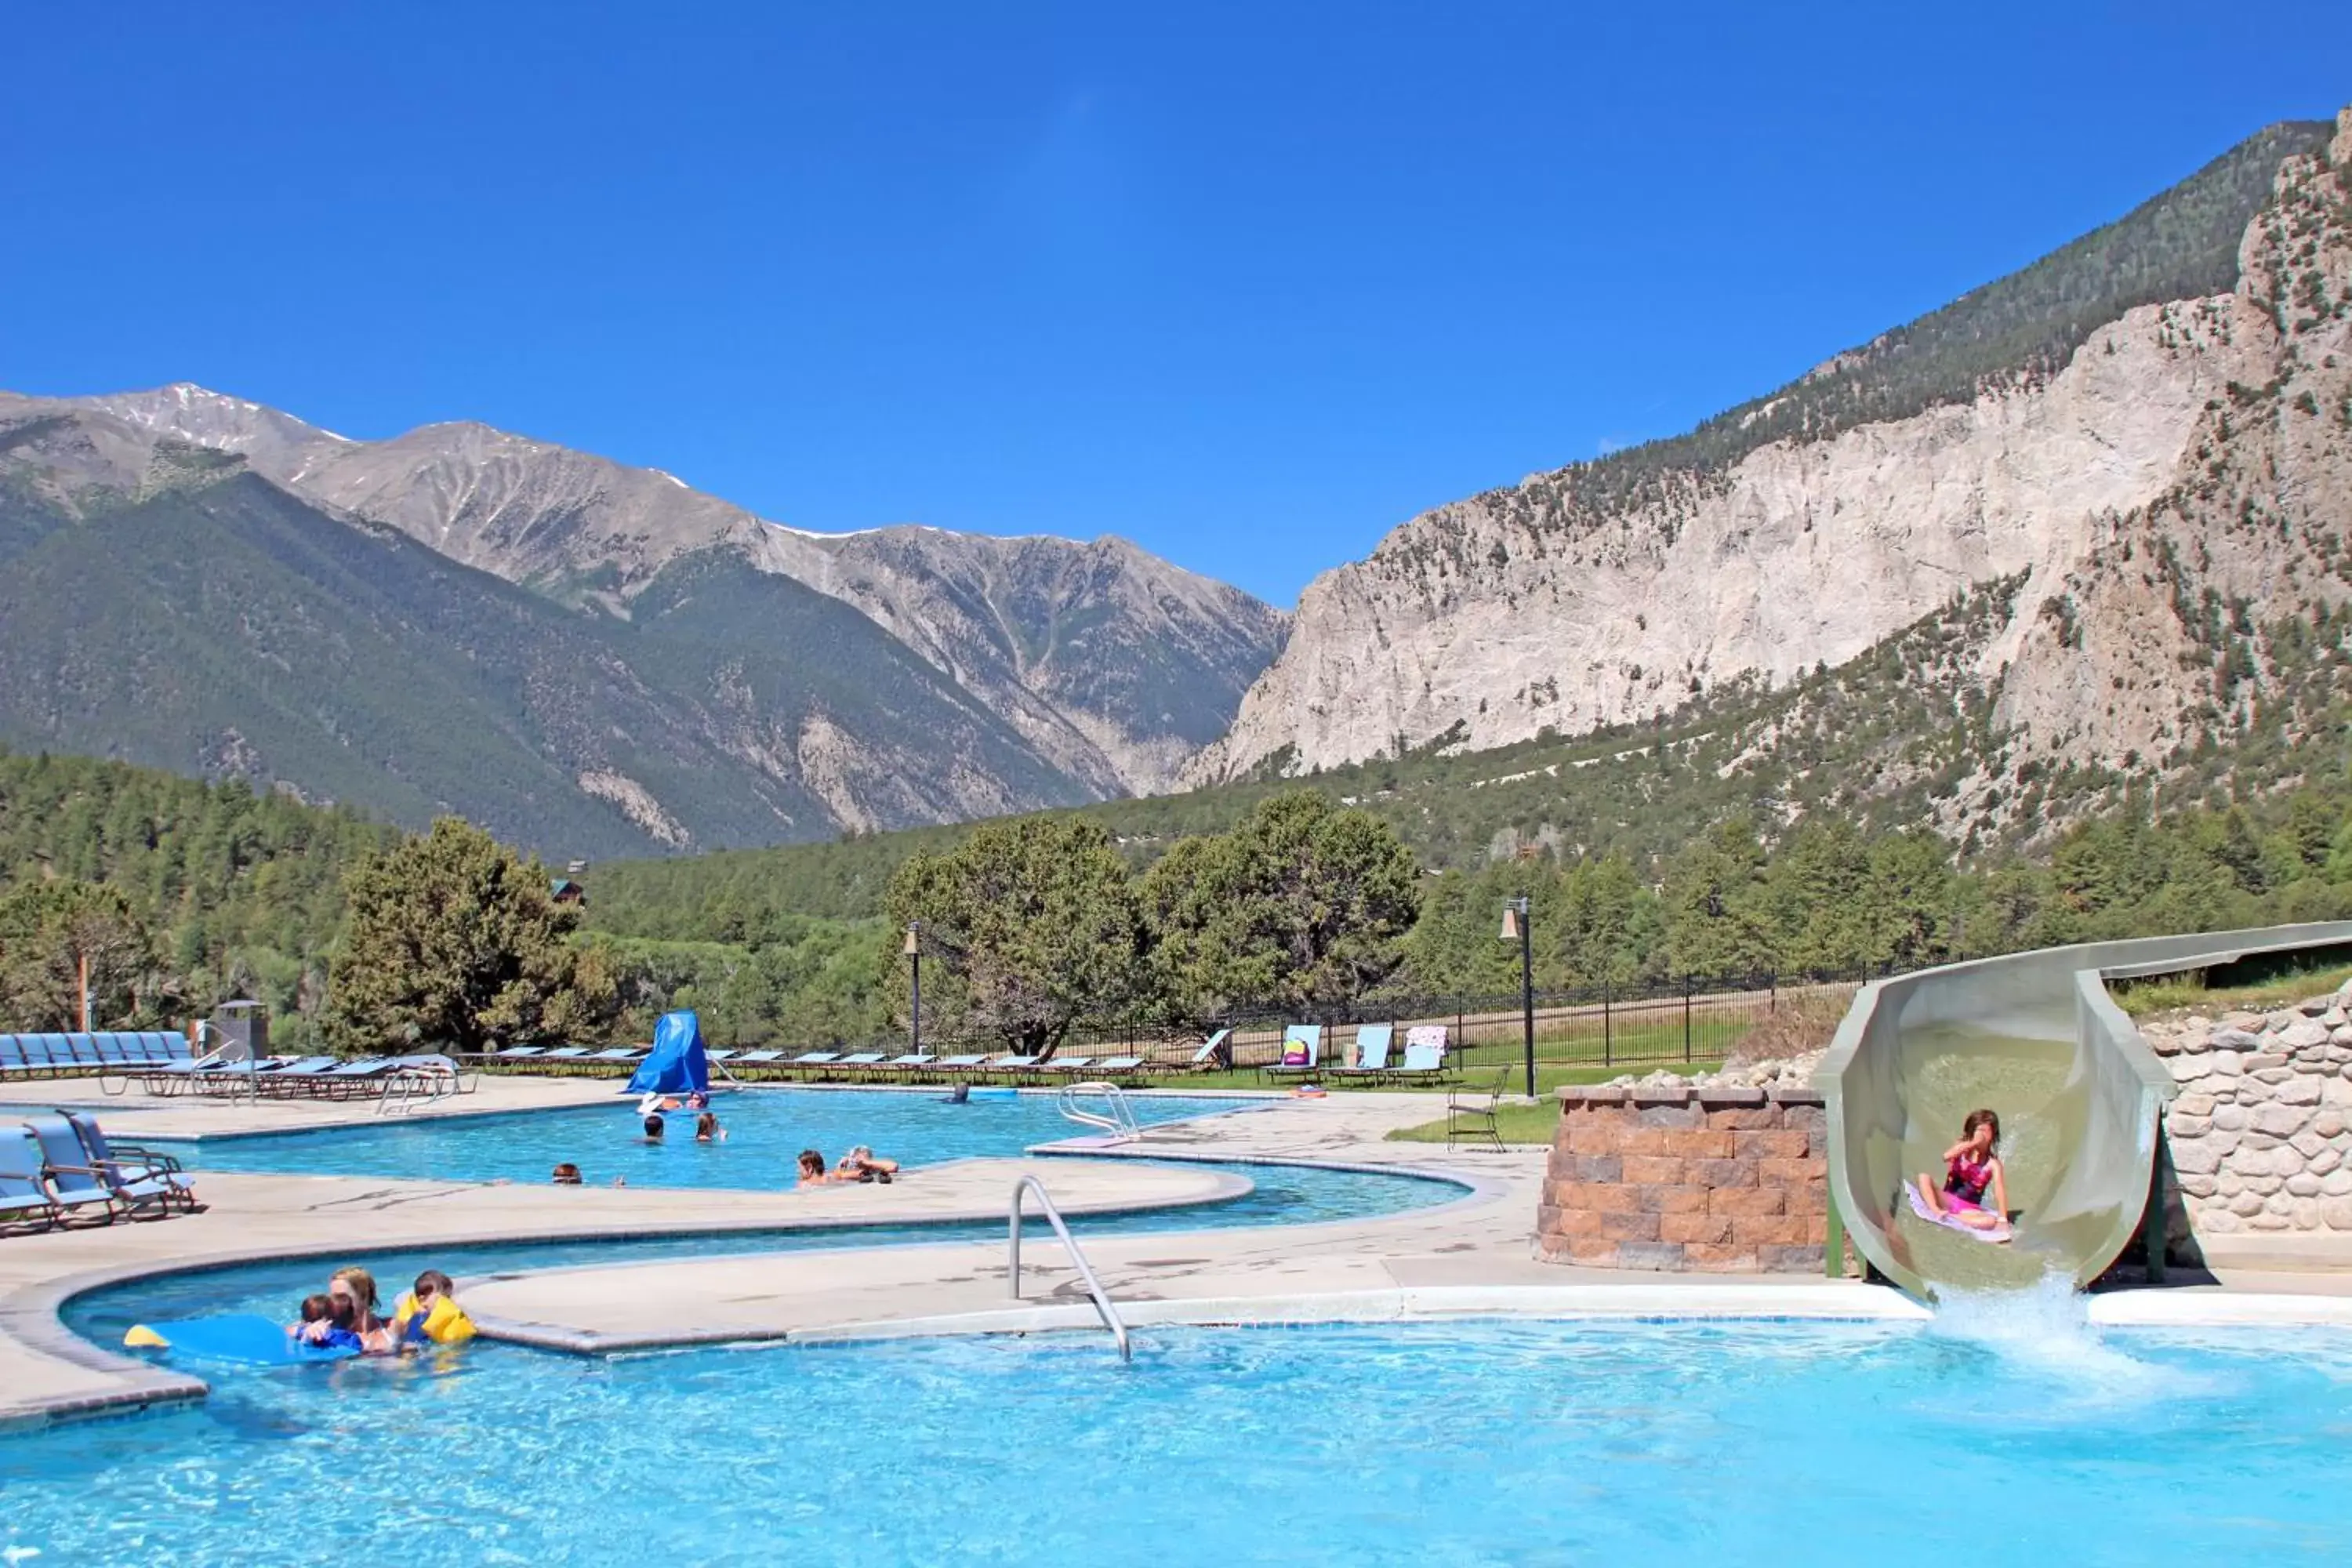 Swimming Pool in Mount Princeton Hot Springs Resort